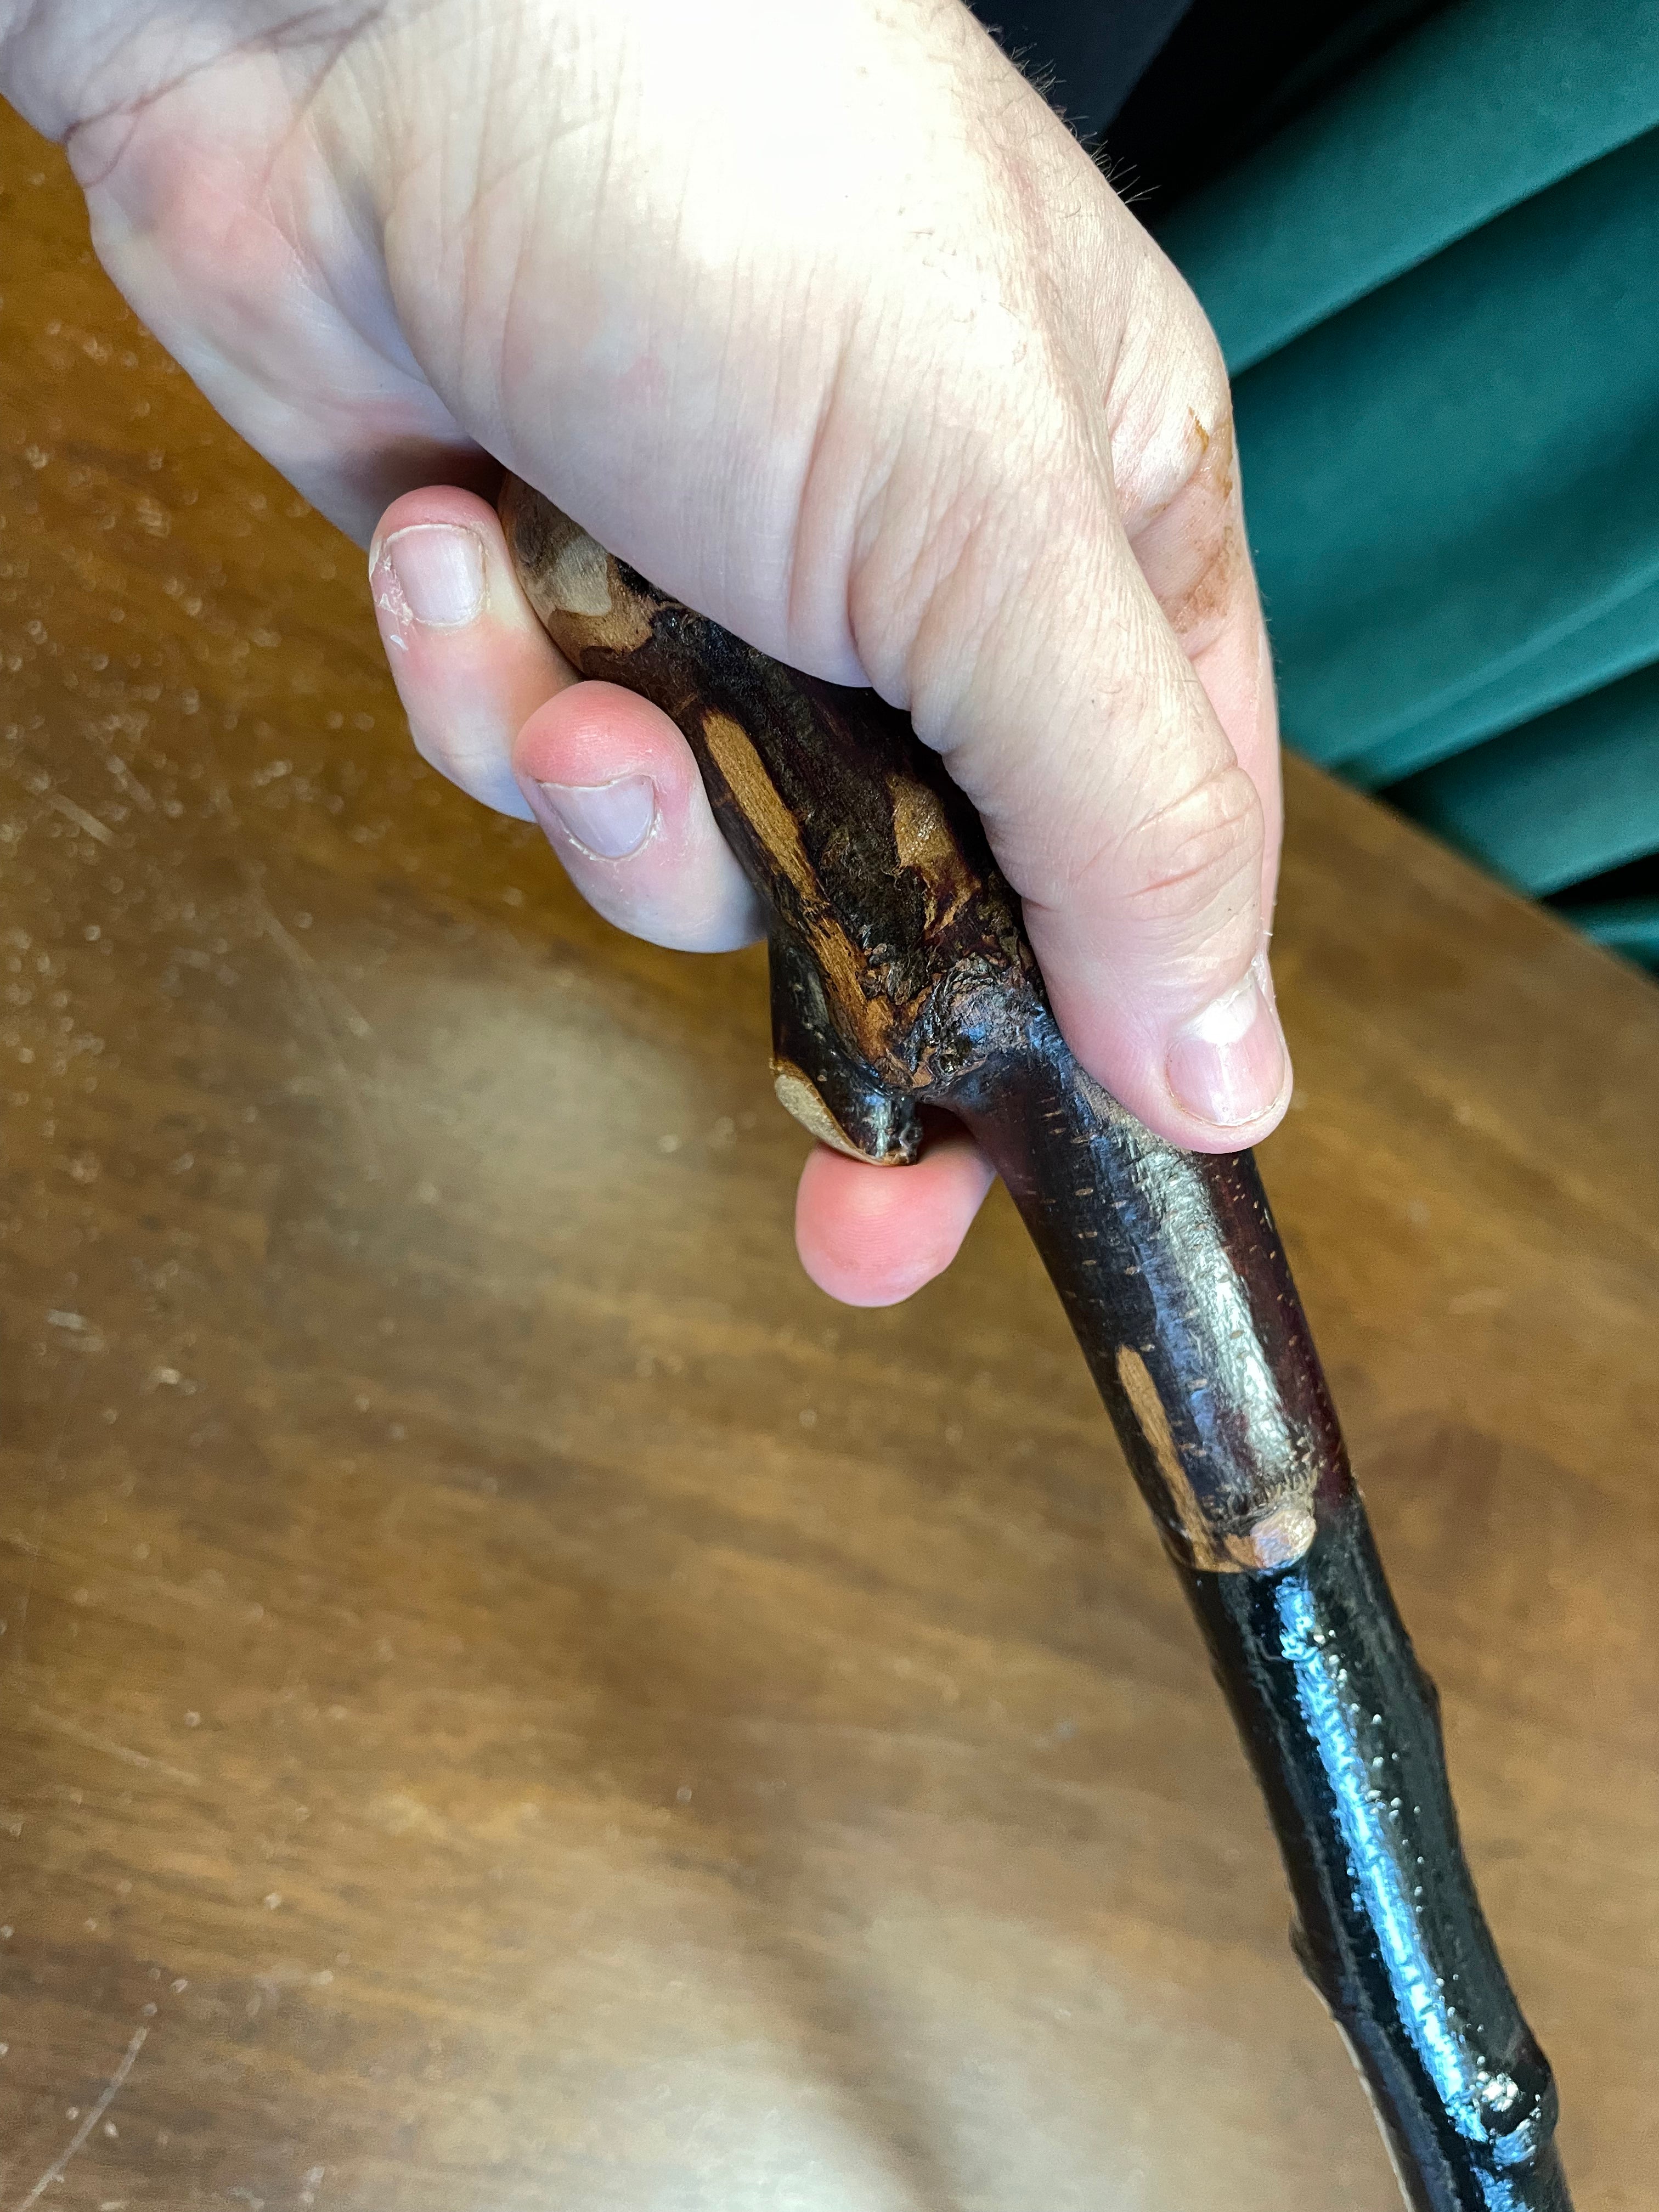 Blackthorn Walking Stick 35 inch - Handmade in Ireland – McCaffrey Crafts  Ltd